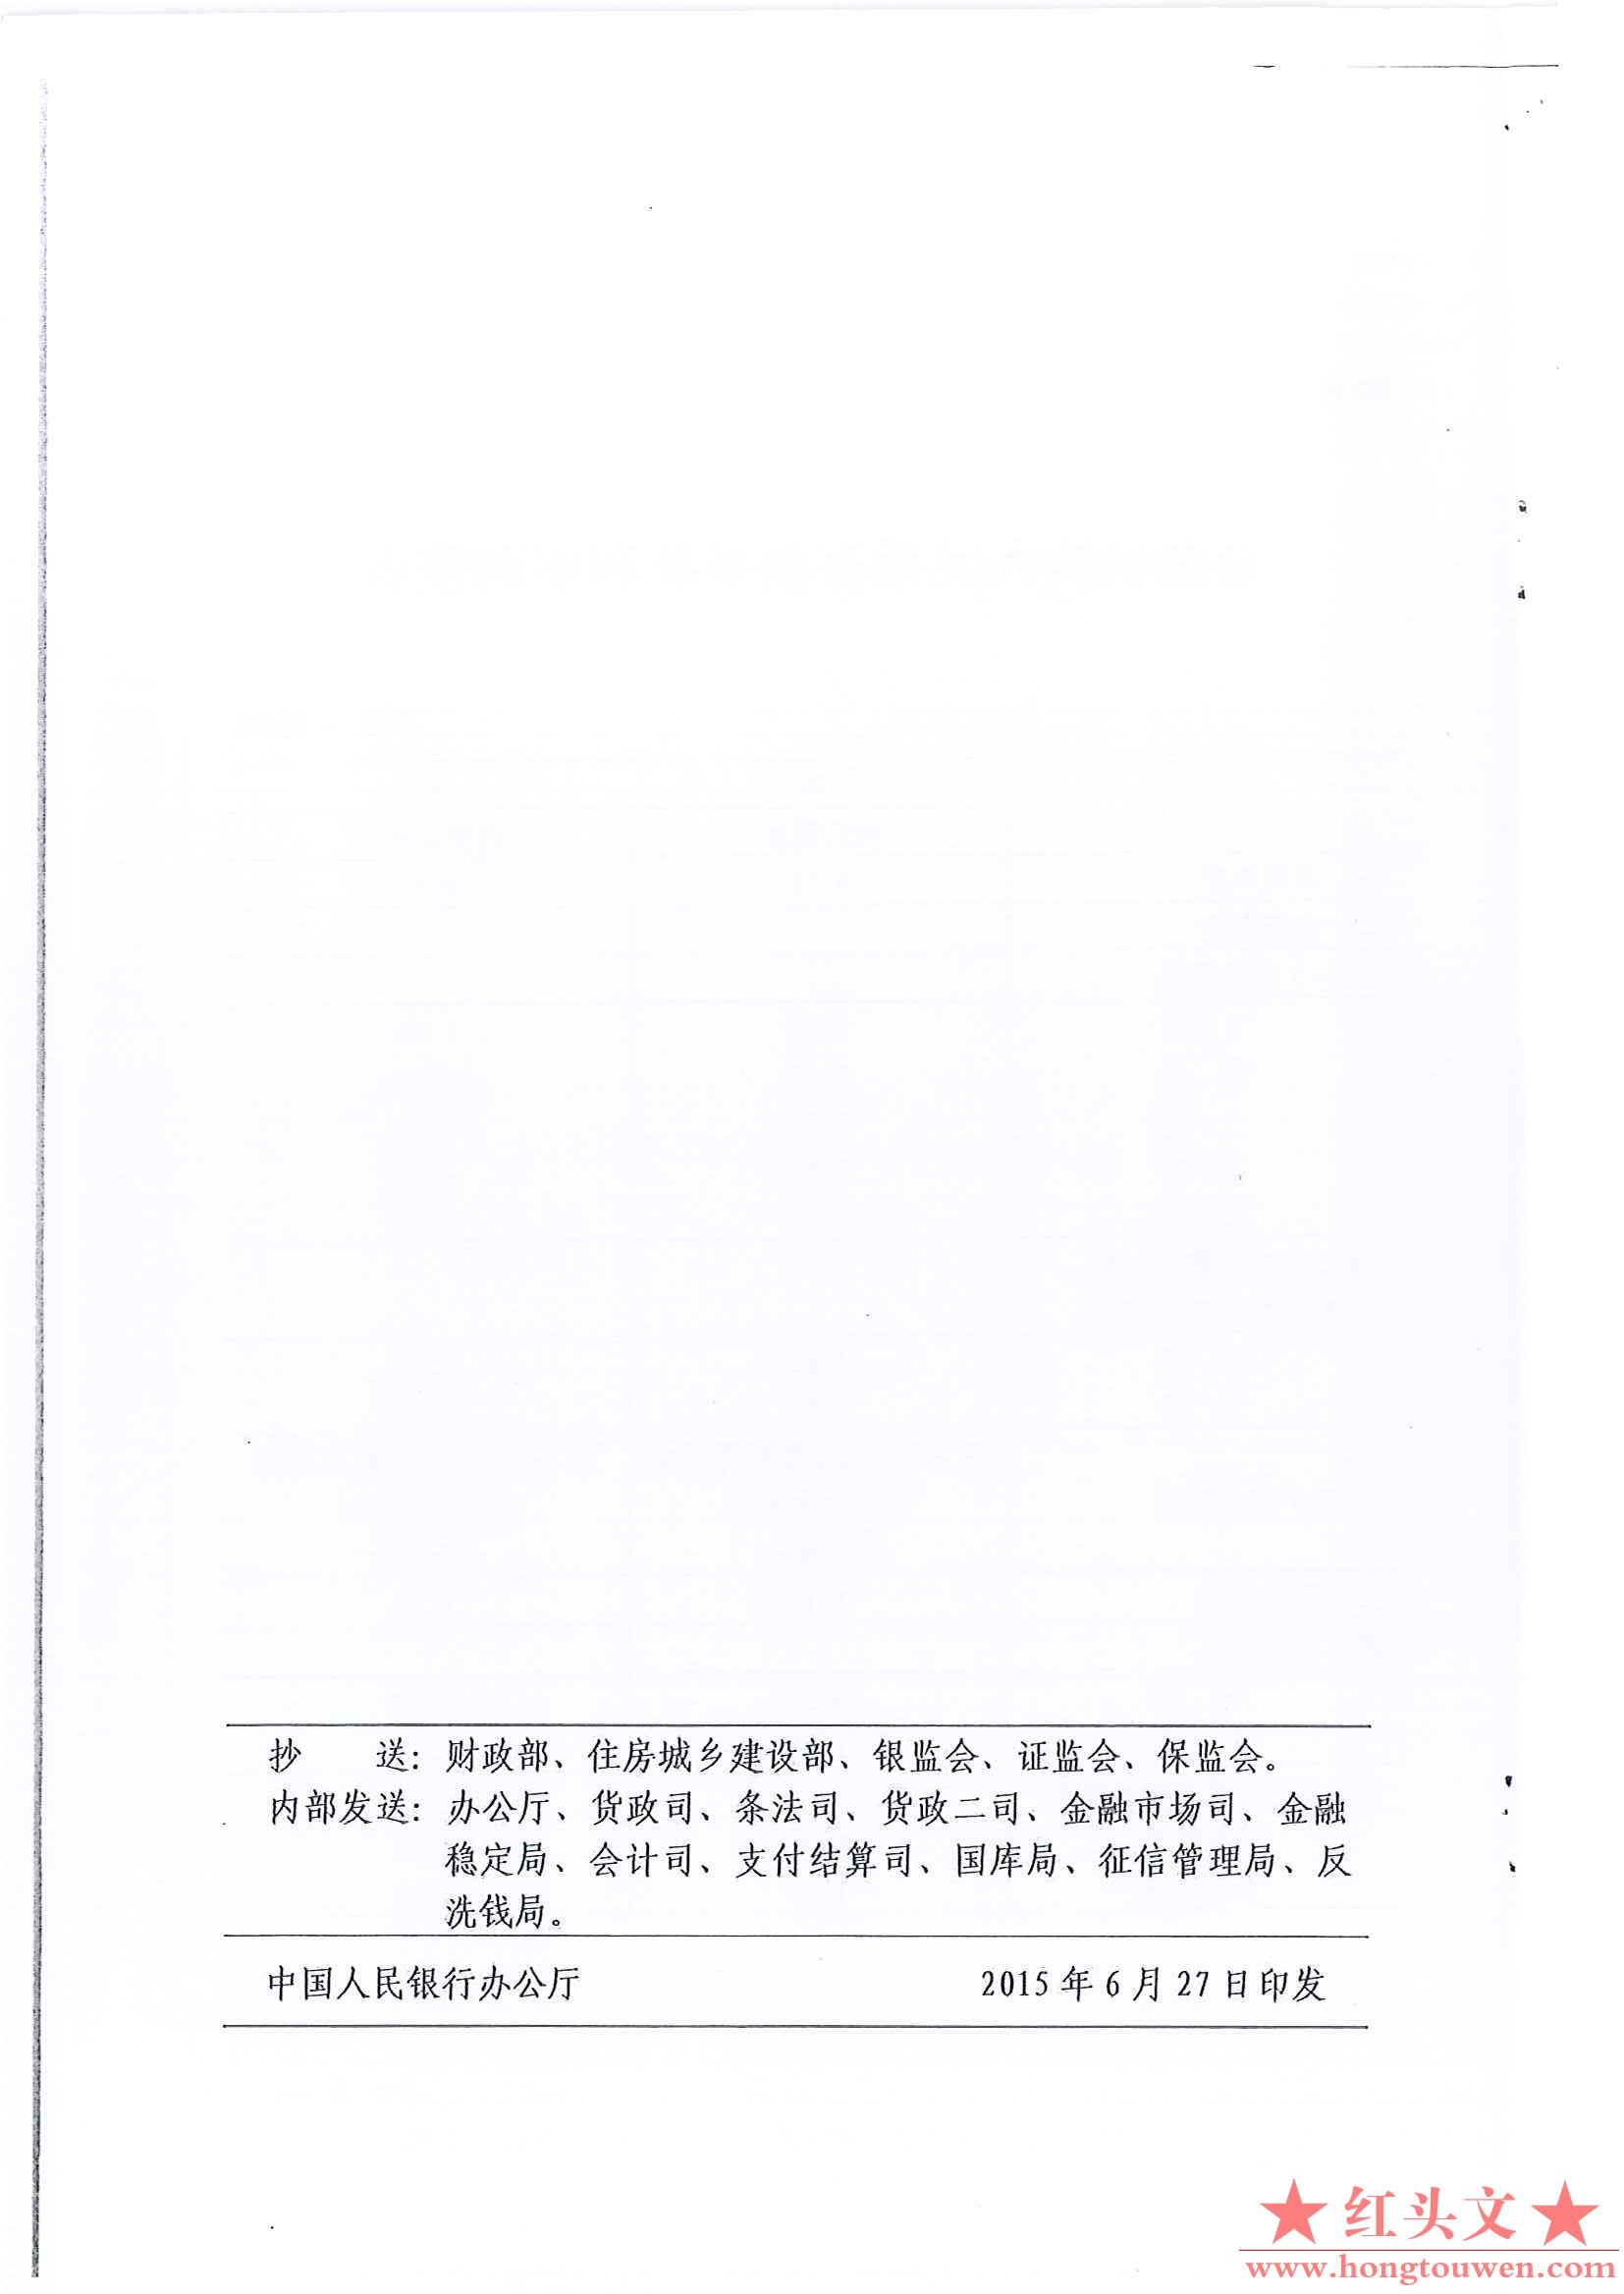 银发[2015]296号-中国人民银行关于下调金融机构人民币贷款和存款基准利率的通知_页面_.jpg